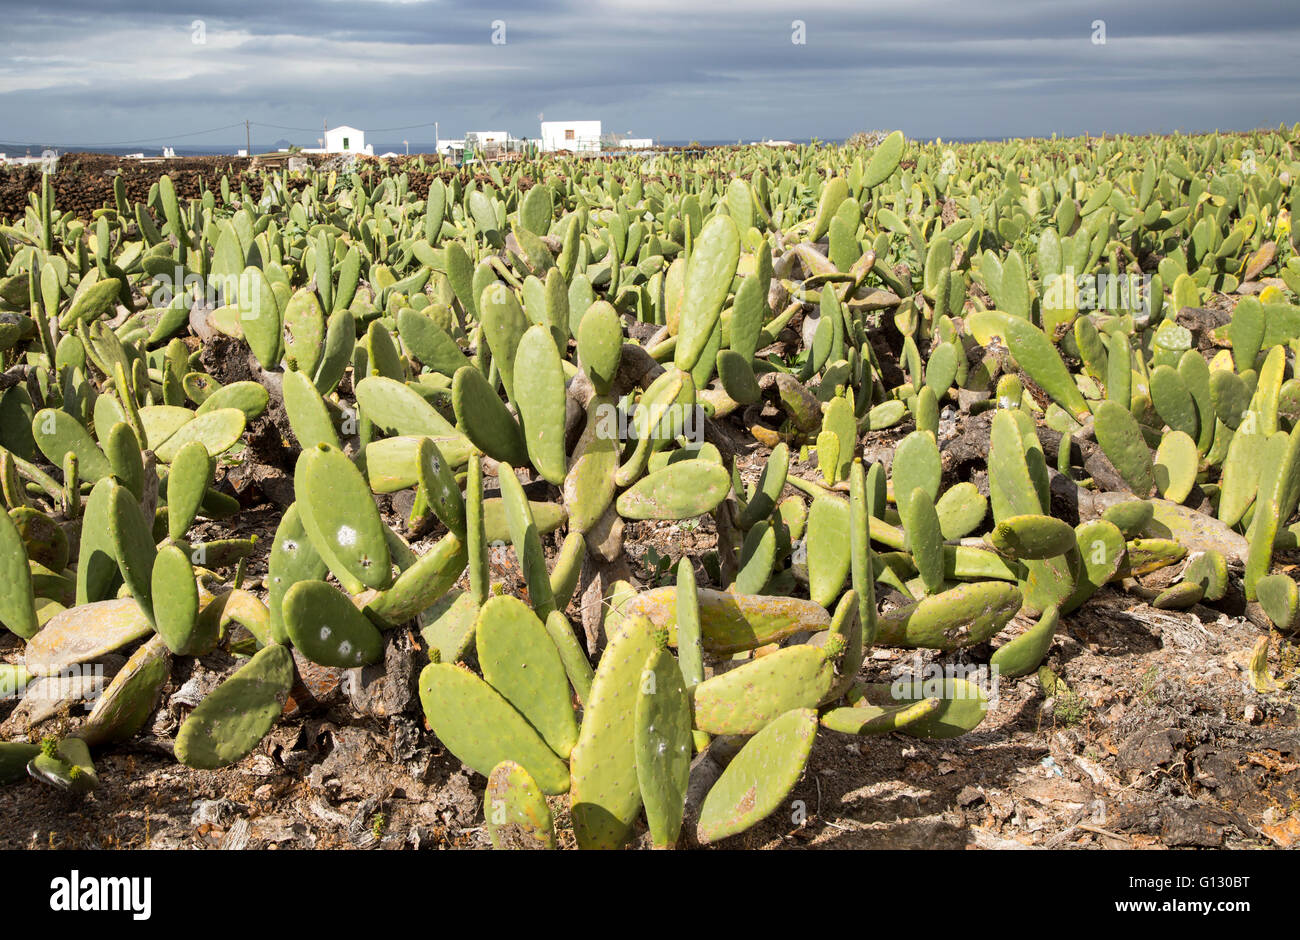 Opuntia Ficus-Indica Stachelige Birne Kaktus Pflanze für Cochenille Produktion, Mala, Lanzarote, Kanarische Inseln, Spanien Stockfoto